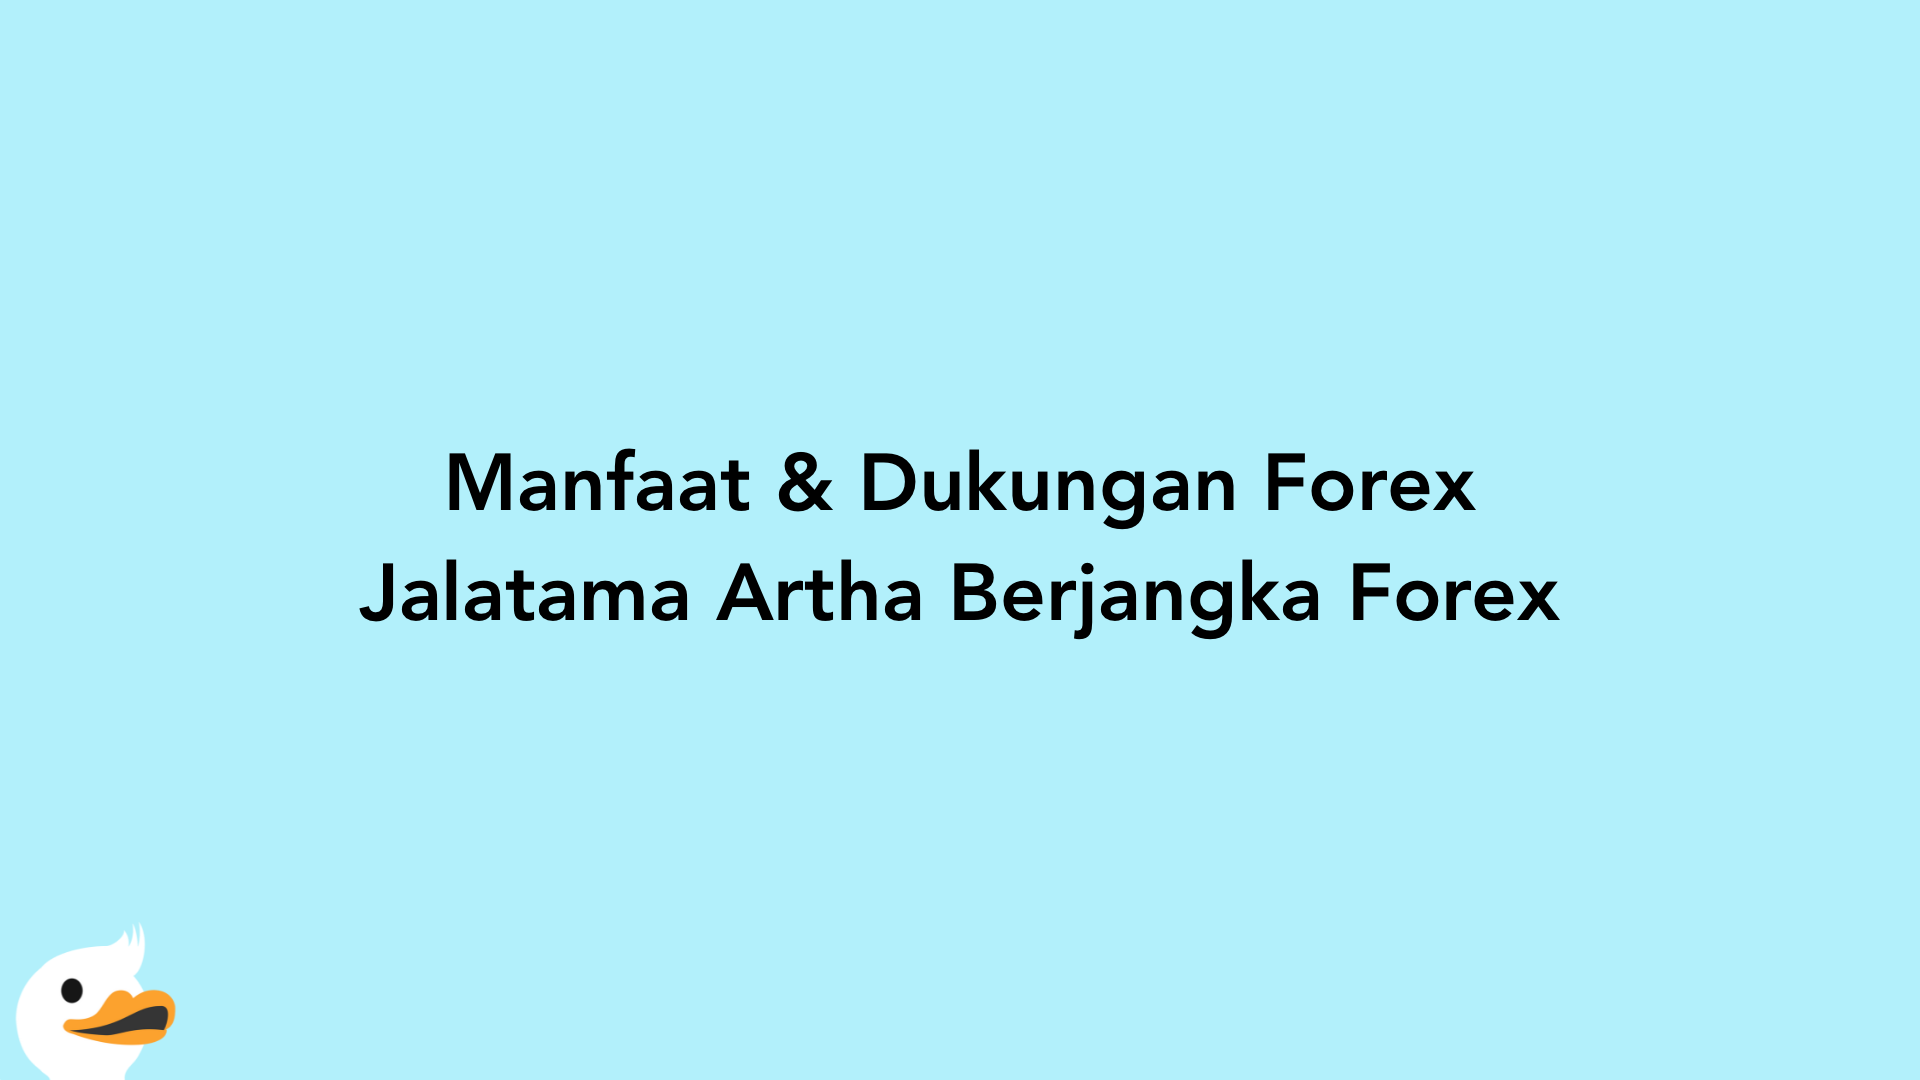 Manfaat & Dukungan Forex Jalatama Artha Berjangka Forex